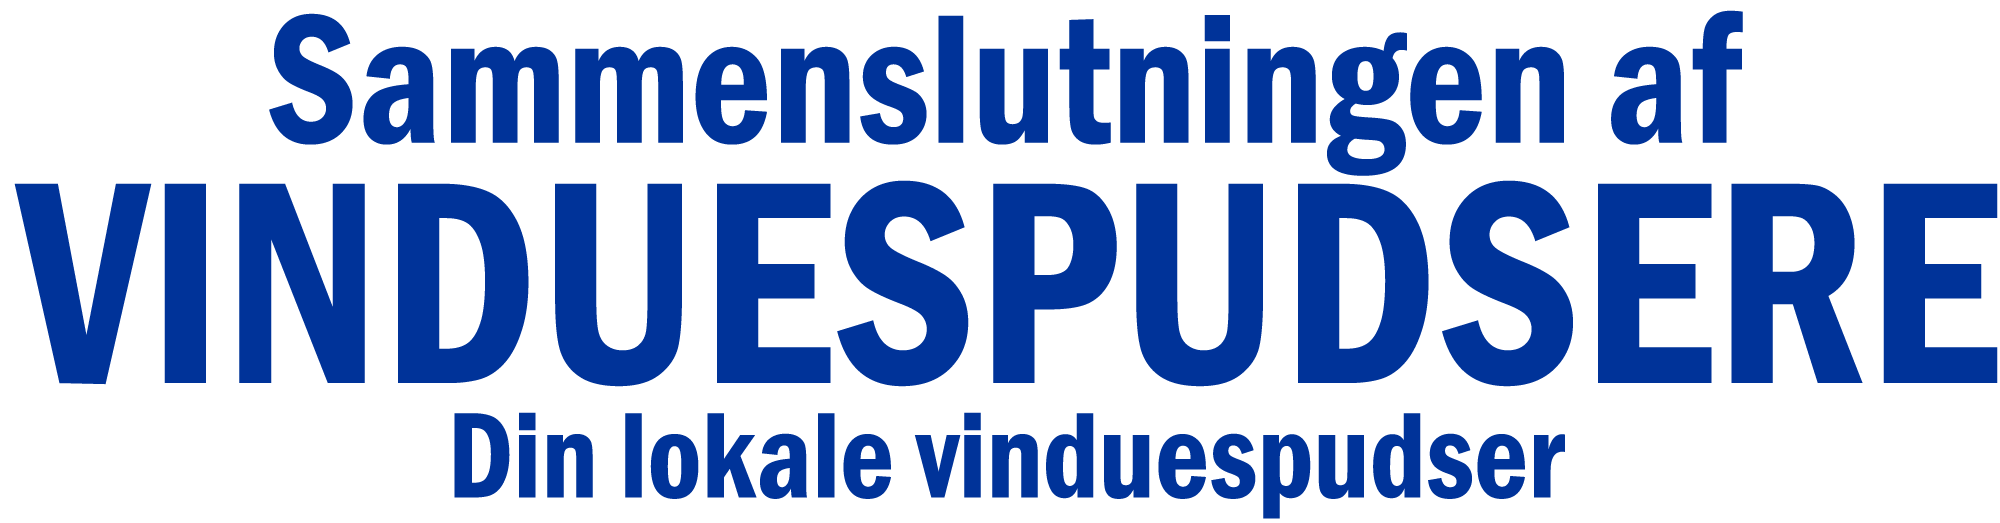 Sammenslutningen af Vinduespudsere Logo